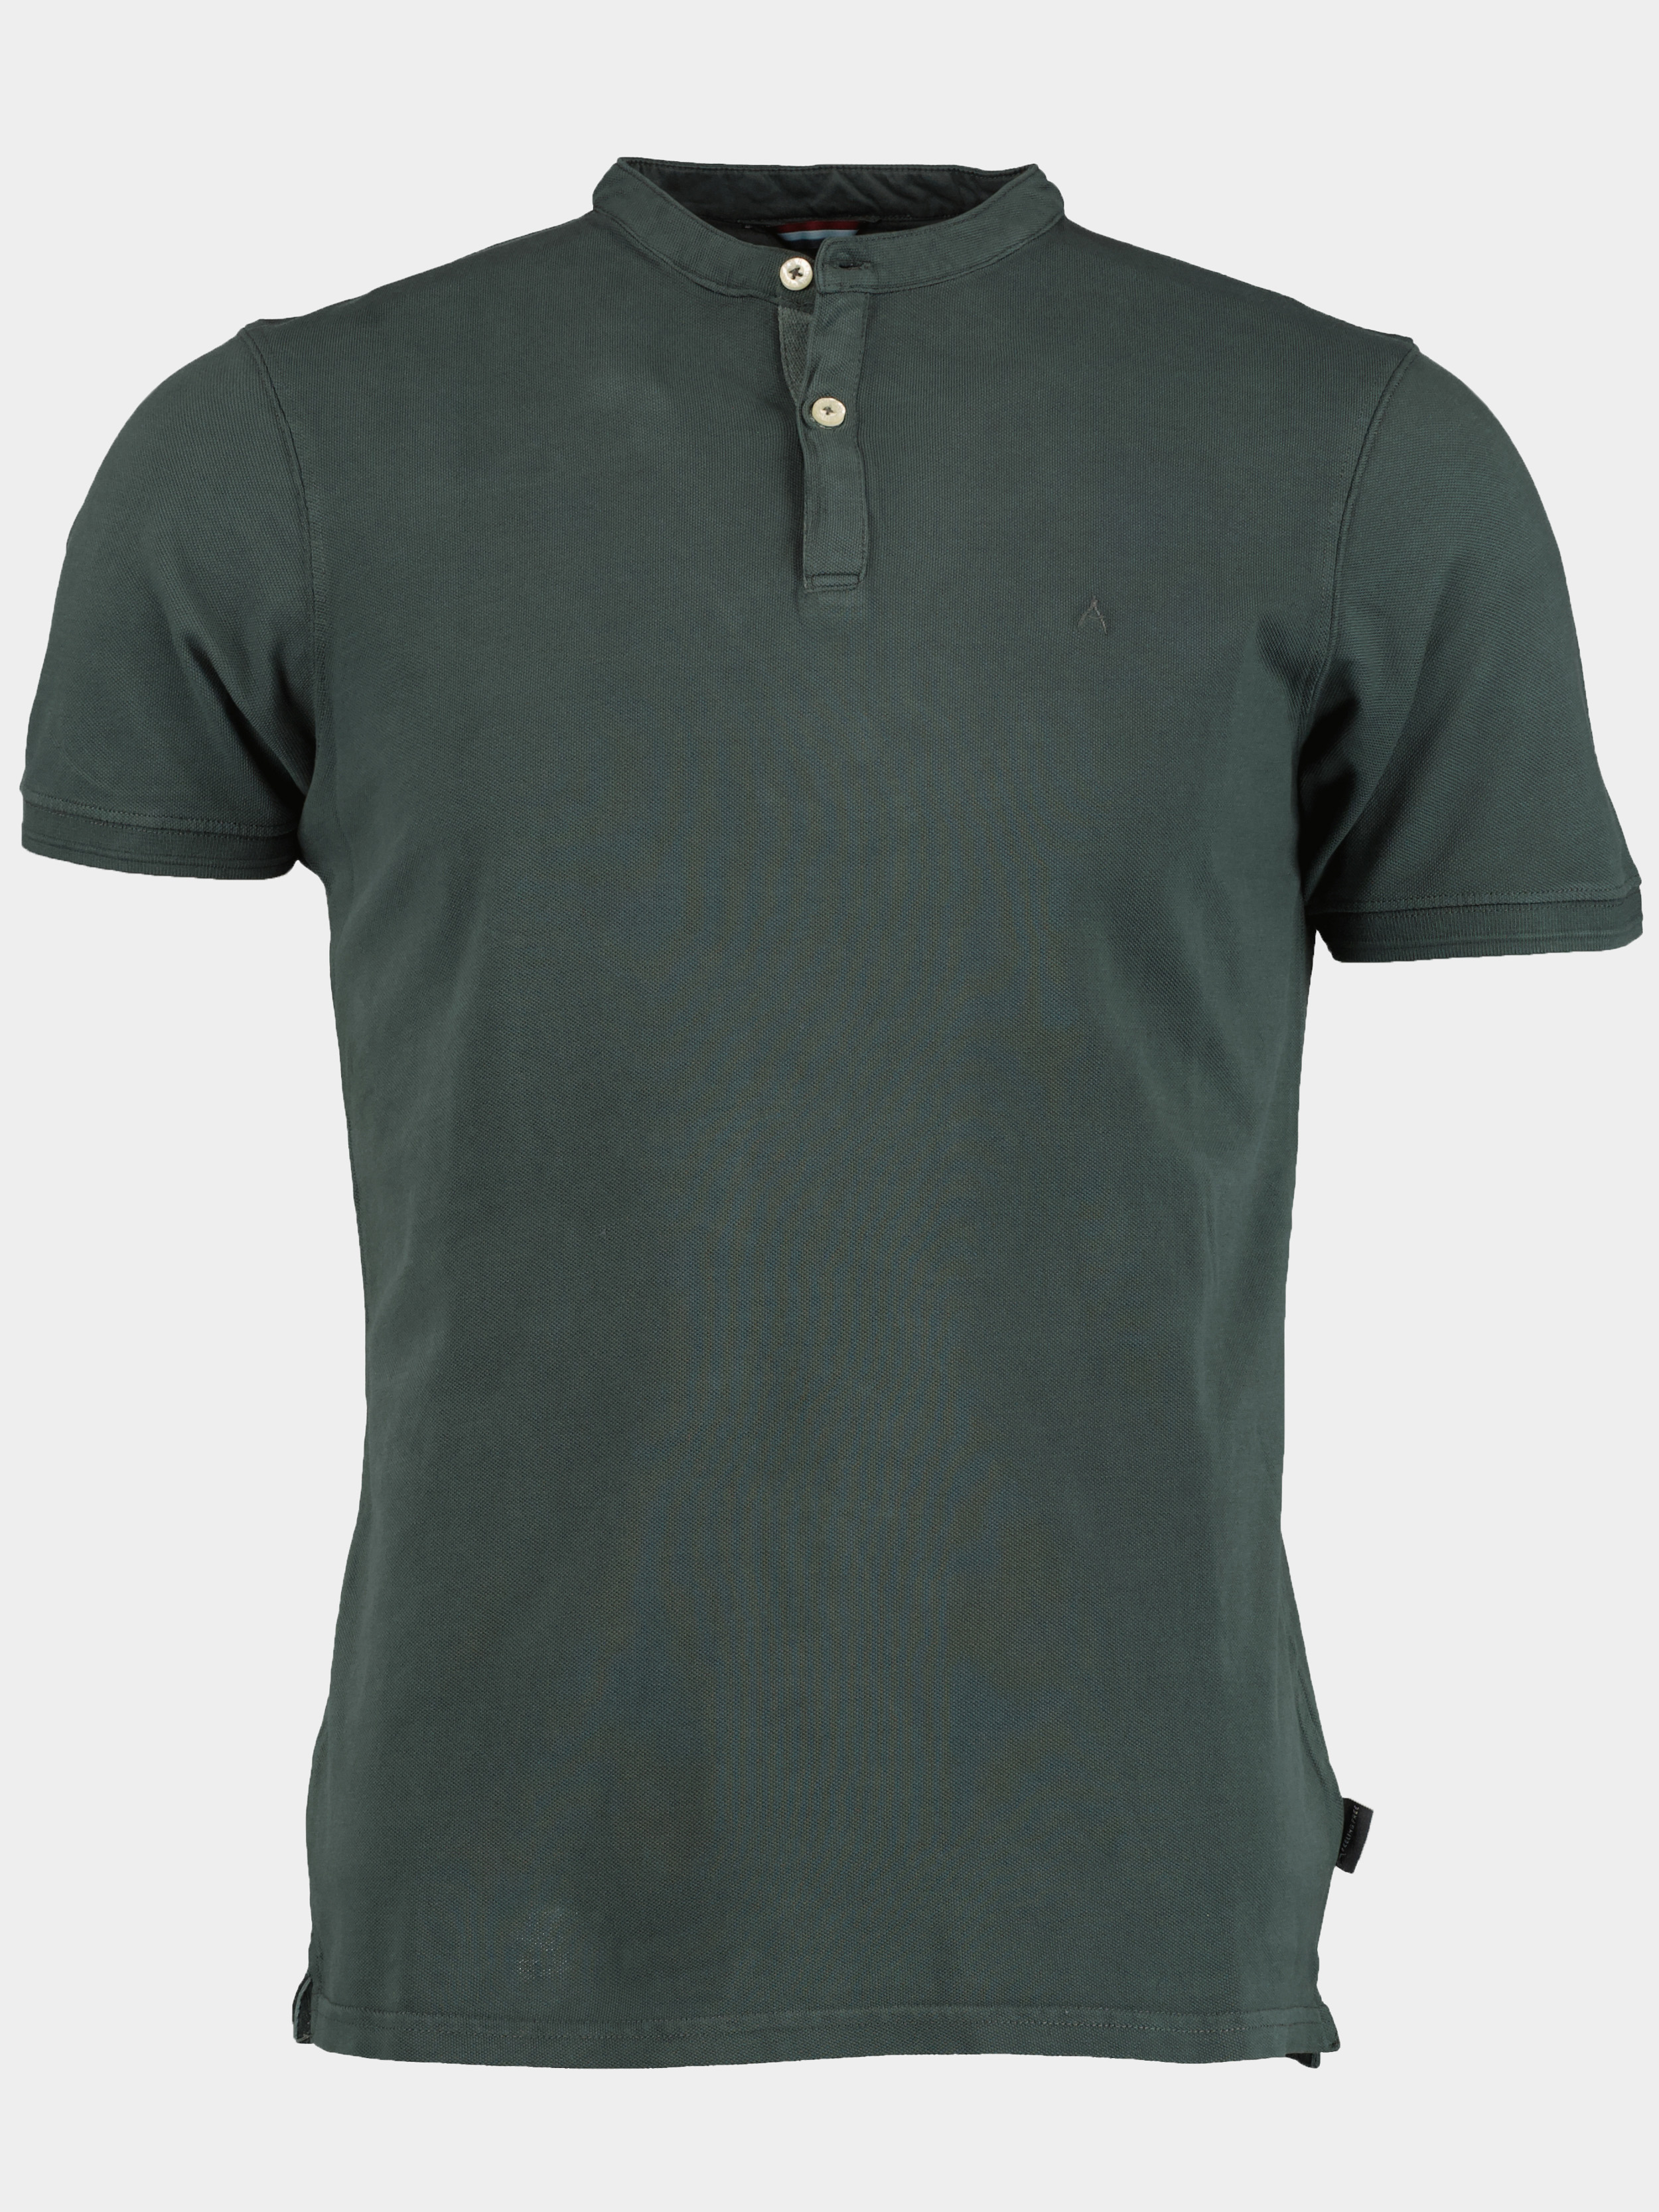 DNR T-shirt korte mouw Groen Shirt 39040/640